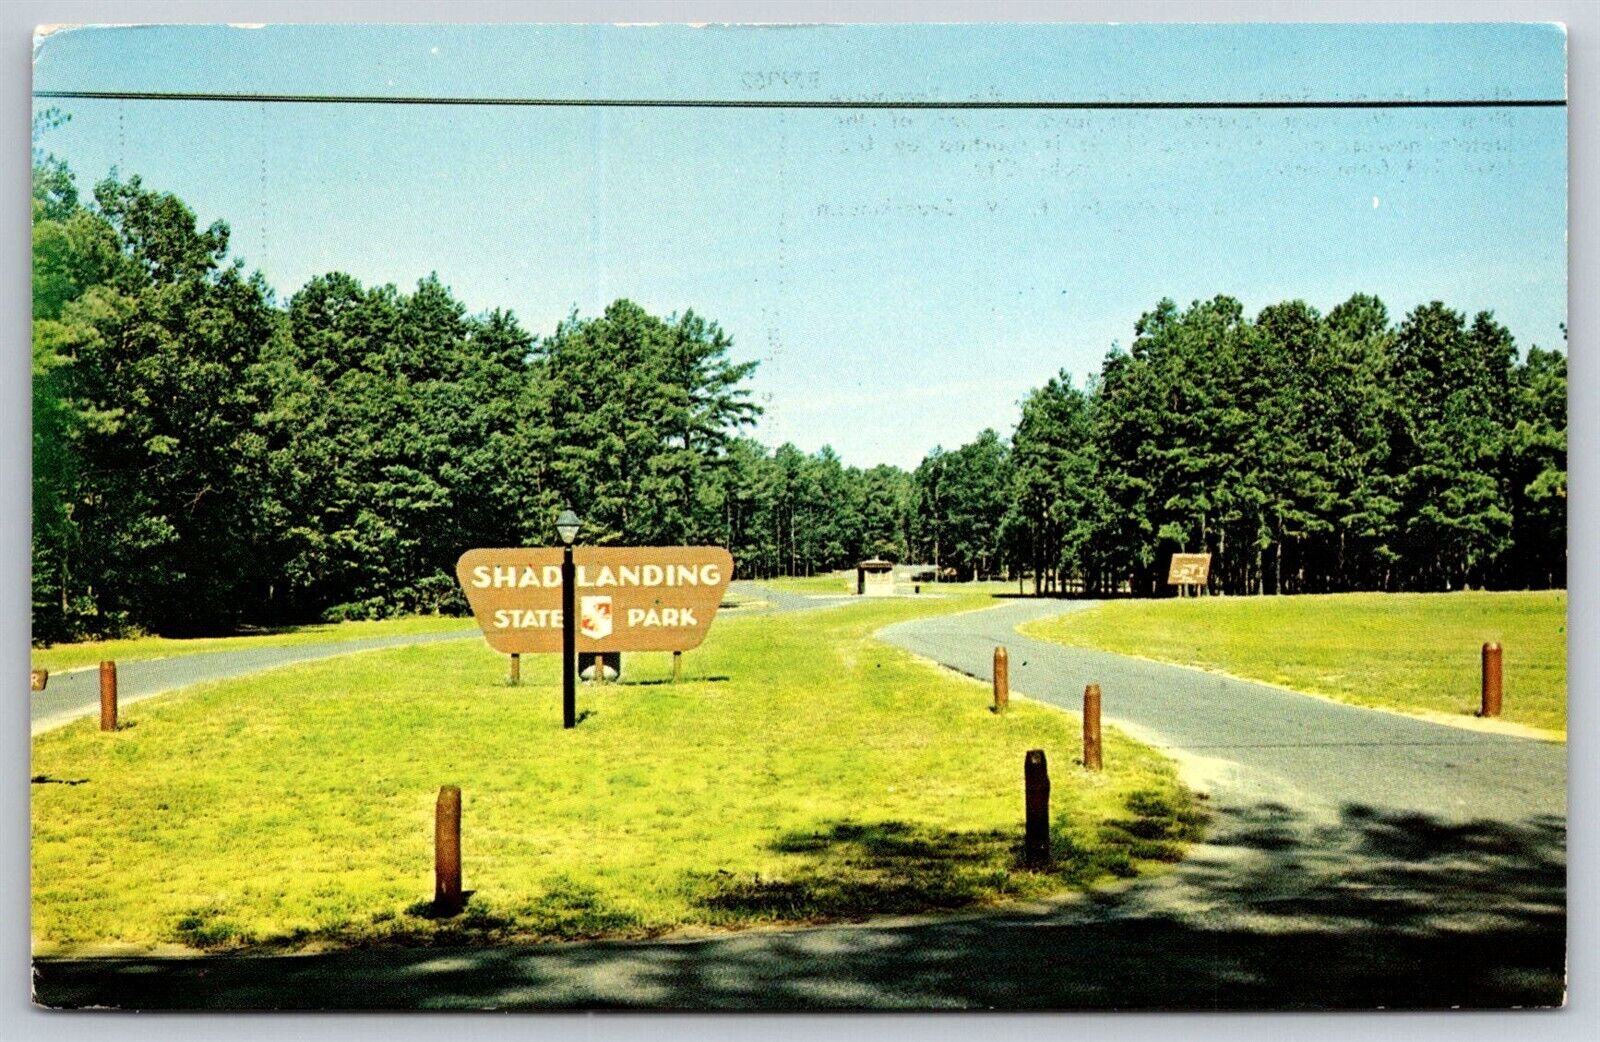 Postcard Shad Landing State Park Maryland Md Pocomoke River Worcester County VTG